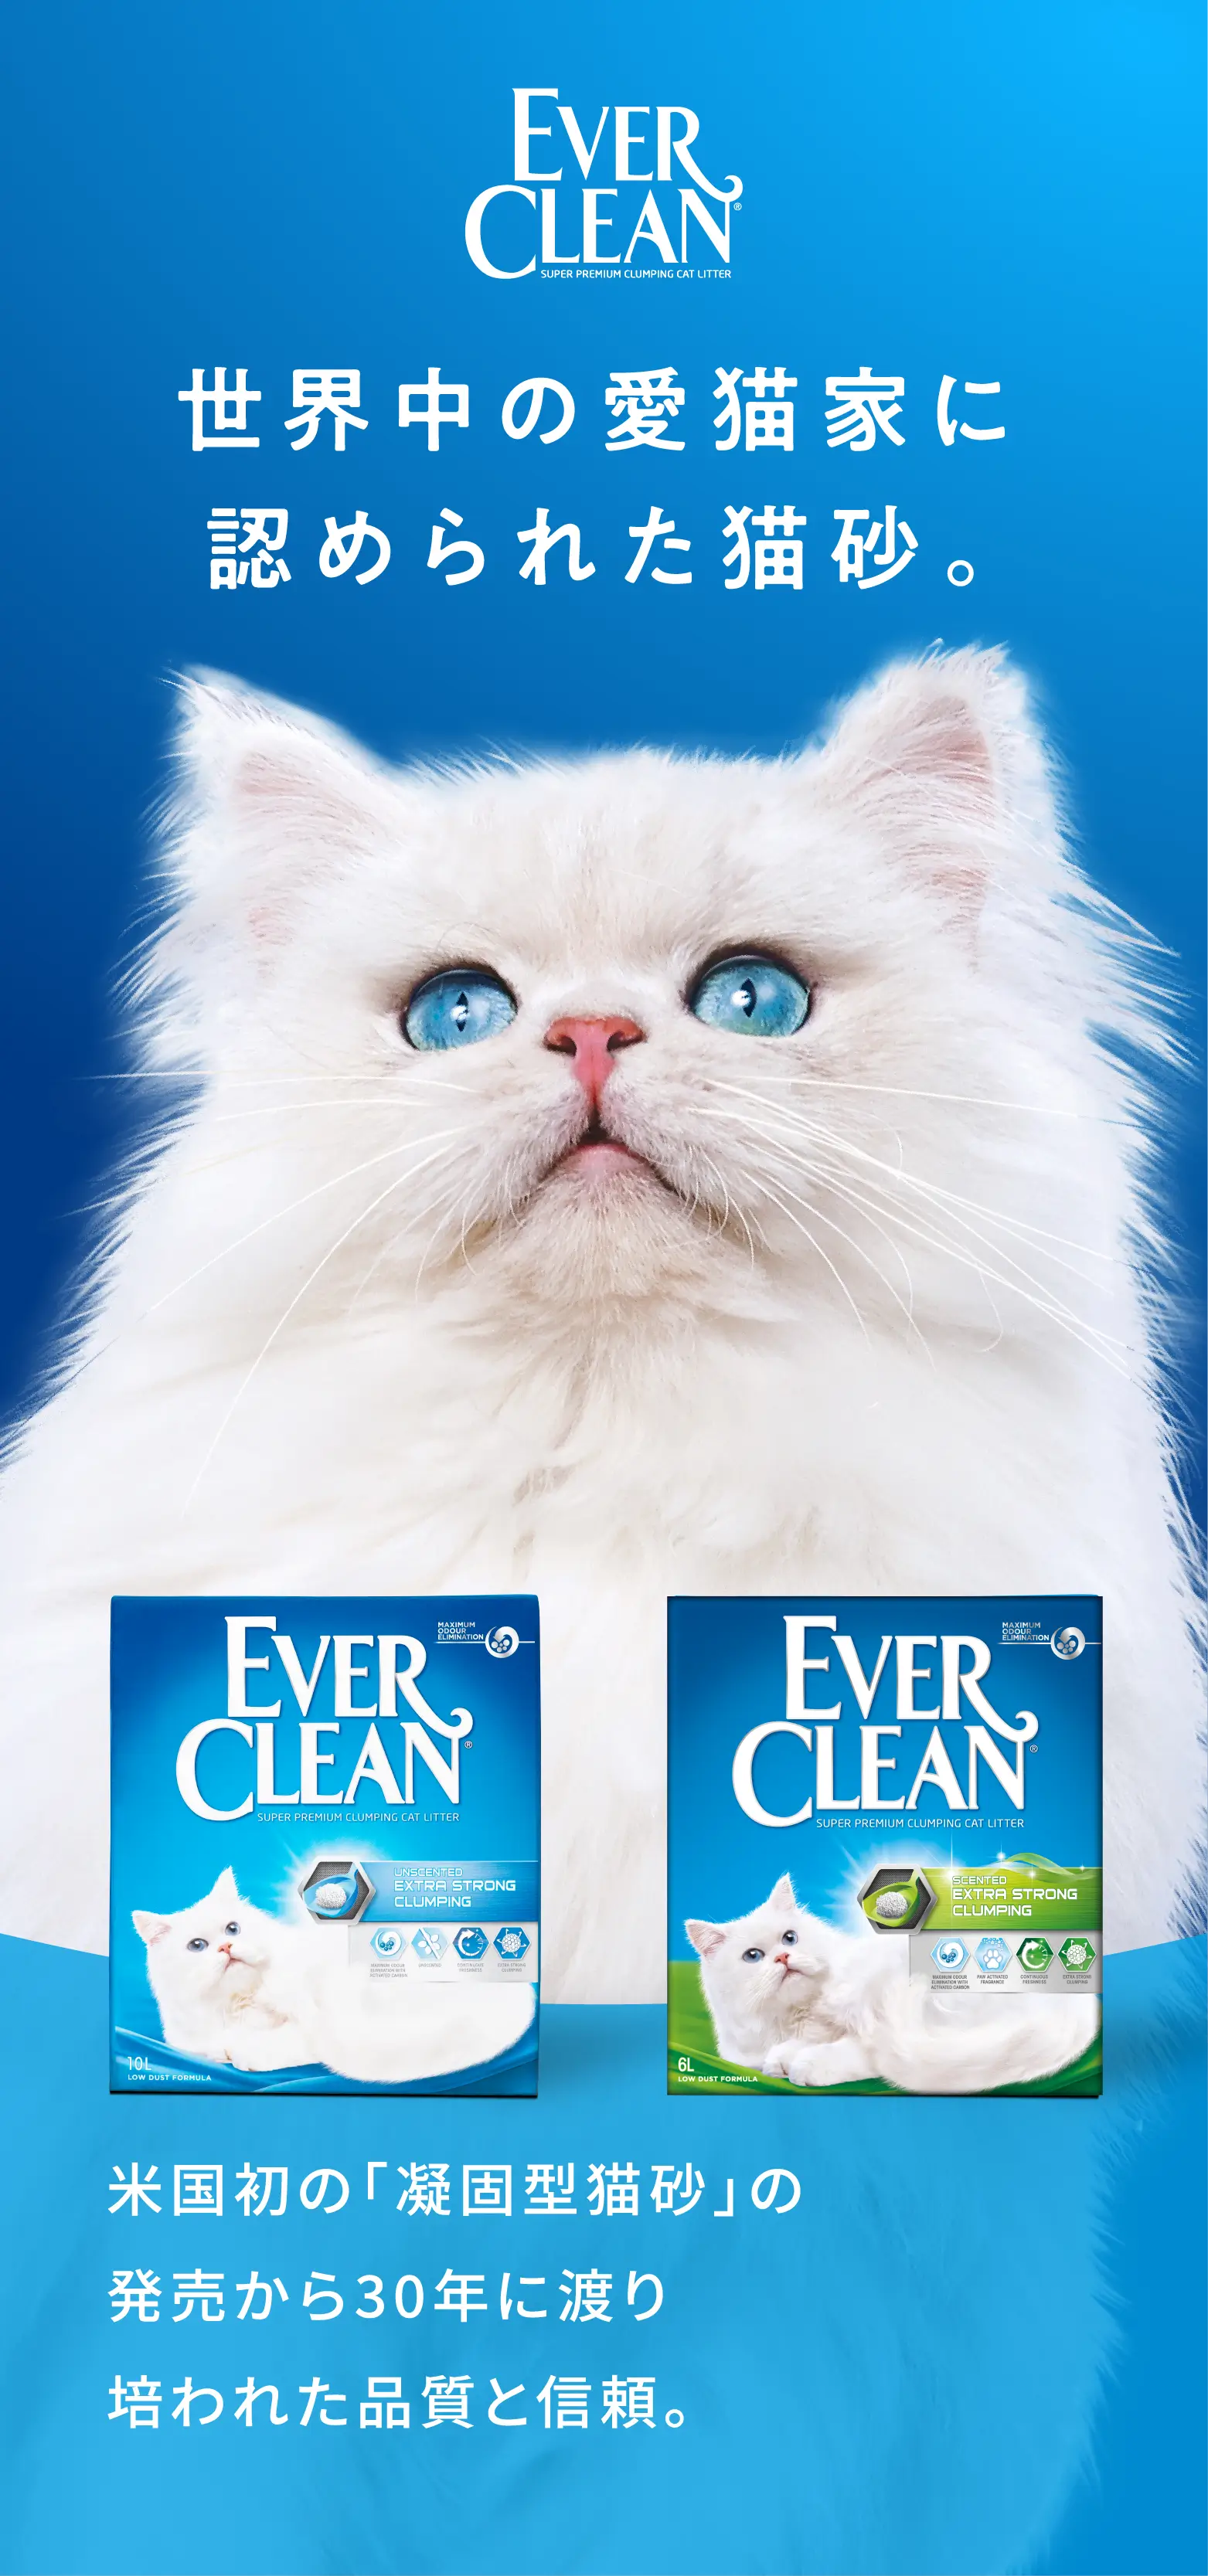 EVERCLEAN(エバークリーン) 世界中の愛猫家に認められた猫砂。米国初の「凝固型猫砂」の発売から30年に渡り培われた品質と信頼。